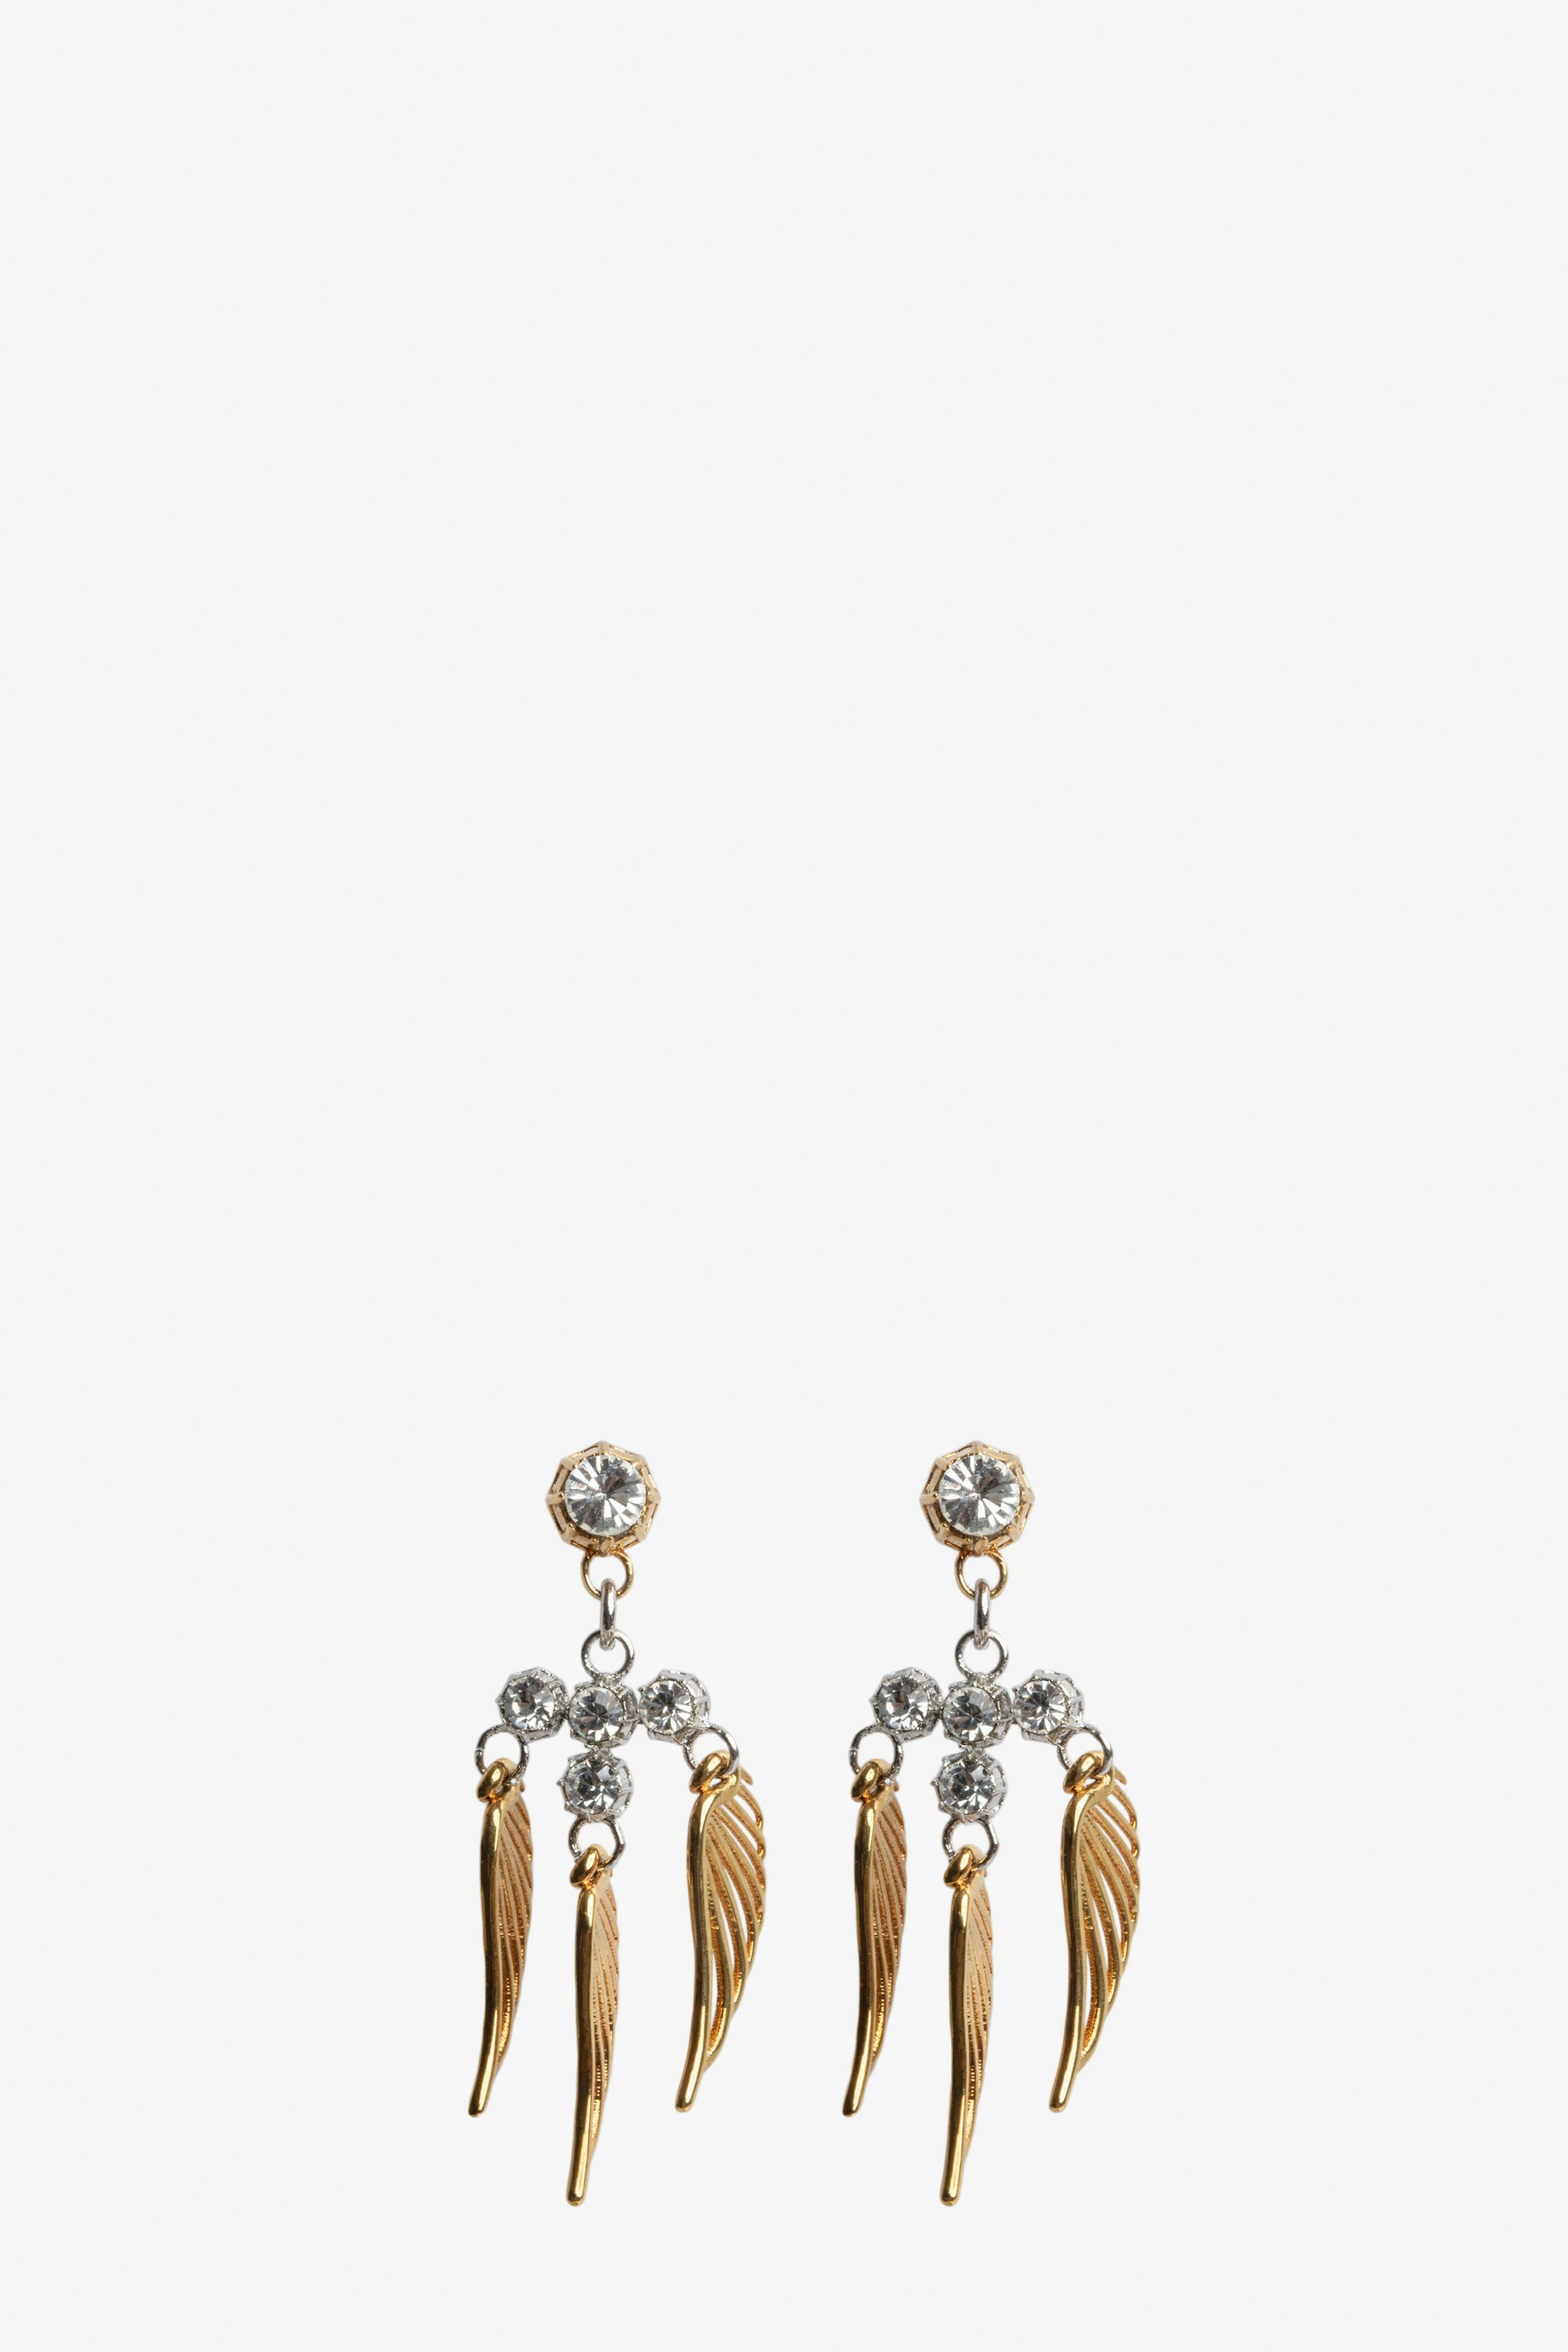 Rock Over Small Earrings - Gold-tone brass wings earrings.